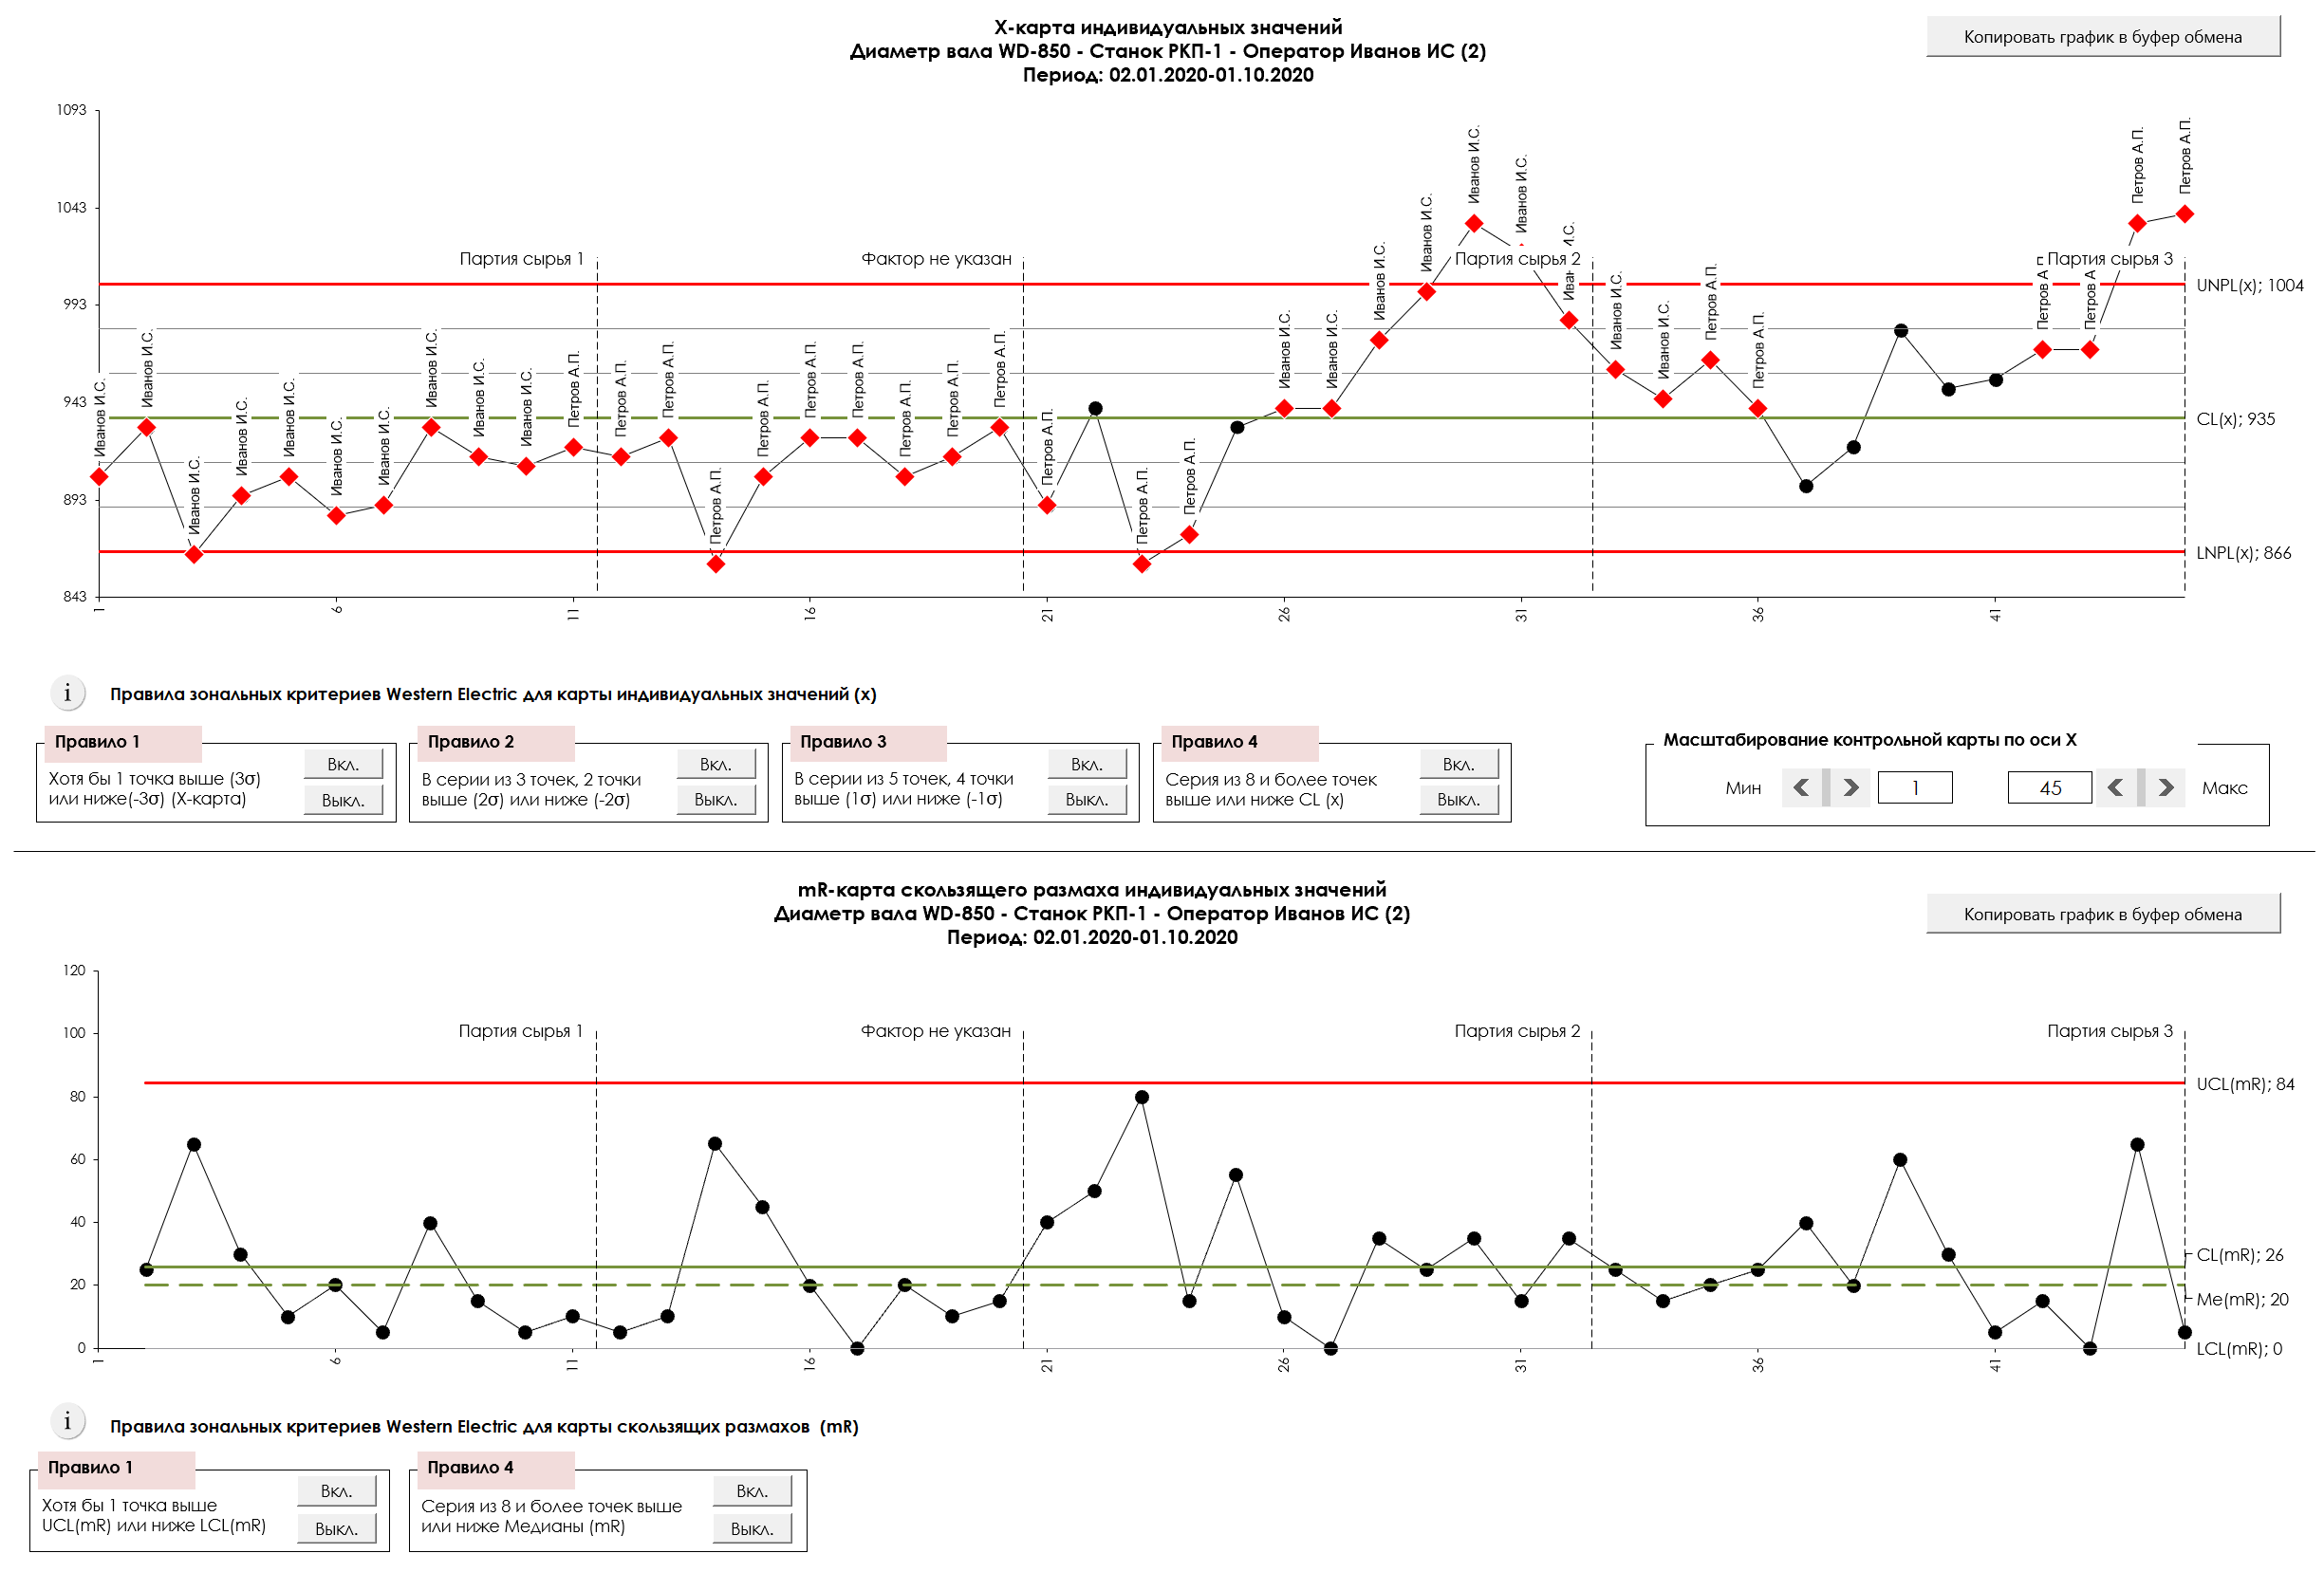 Контрольная карта Шухарта для статистически неустойчивого процесса (программное обеспечение Контрольные карты Шухарта)